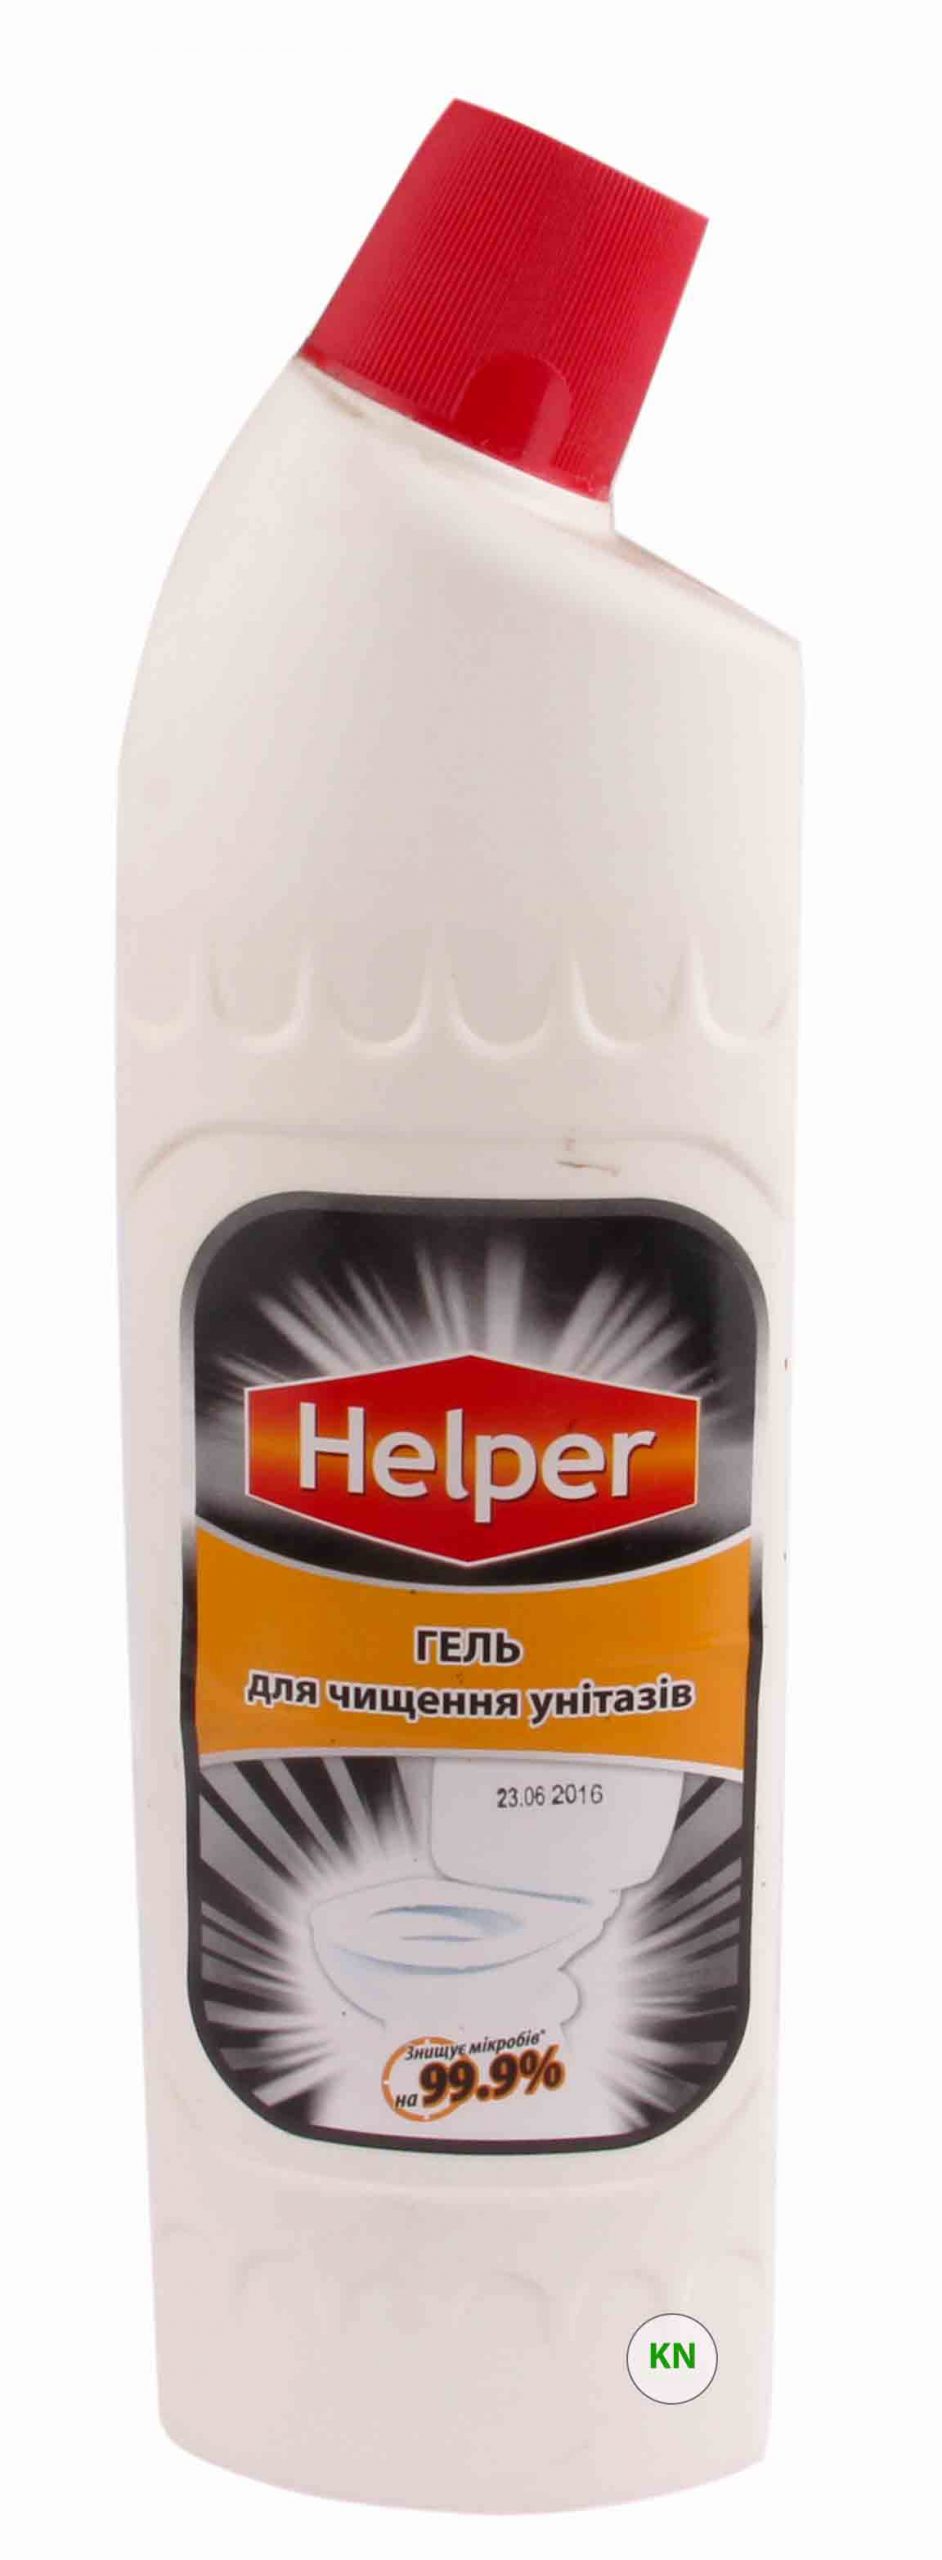 Средство для чистки санизделий "Helper", 1000 мл